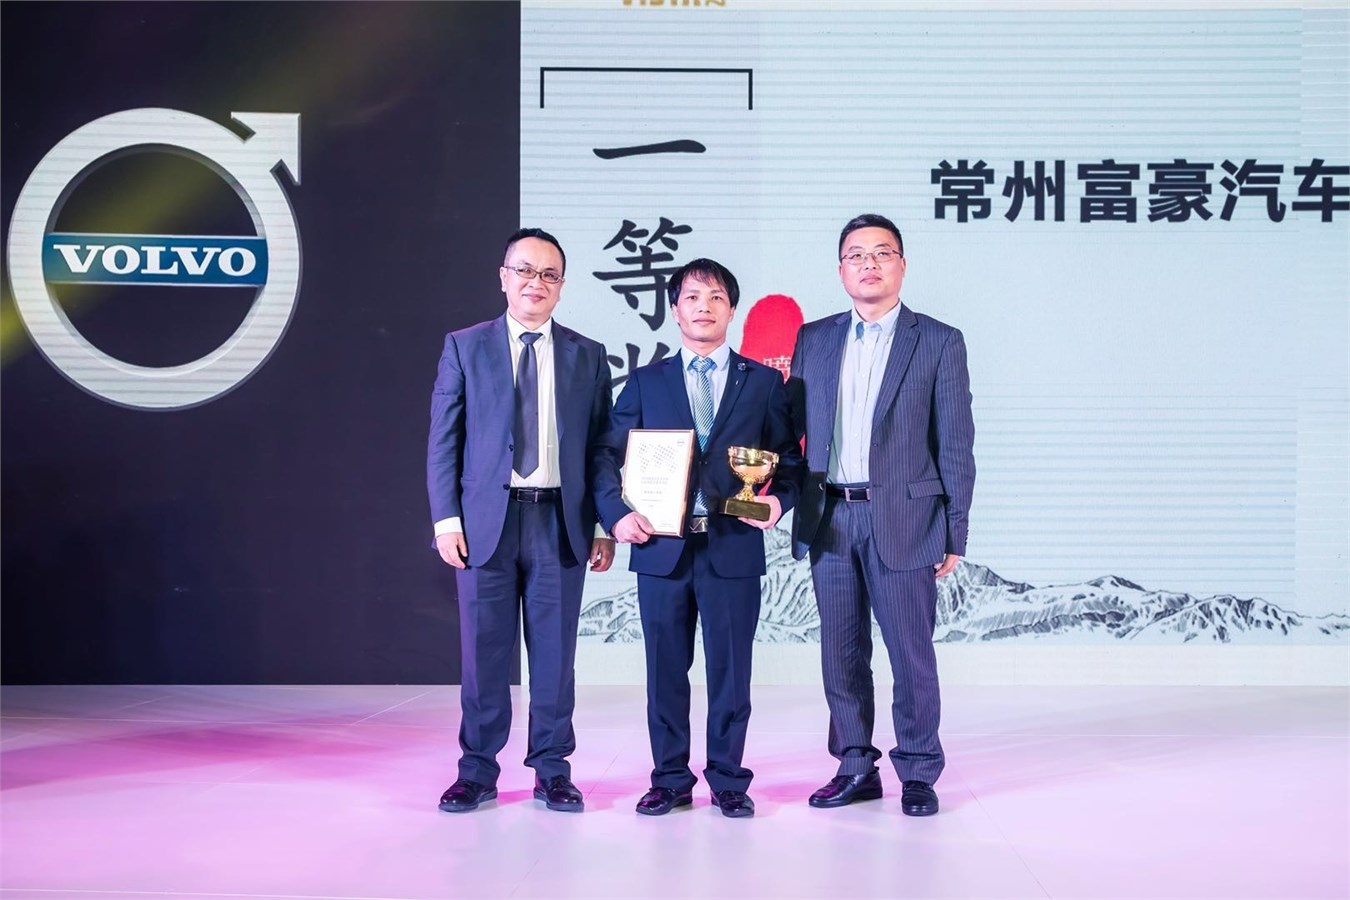 沃尔沃汽车大中华区销售公司总裁陈立哲为2018 VISTA中国区喷漆组冠军常州富豪颁奖